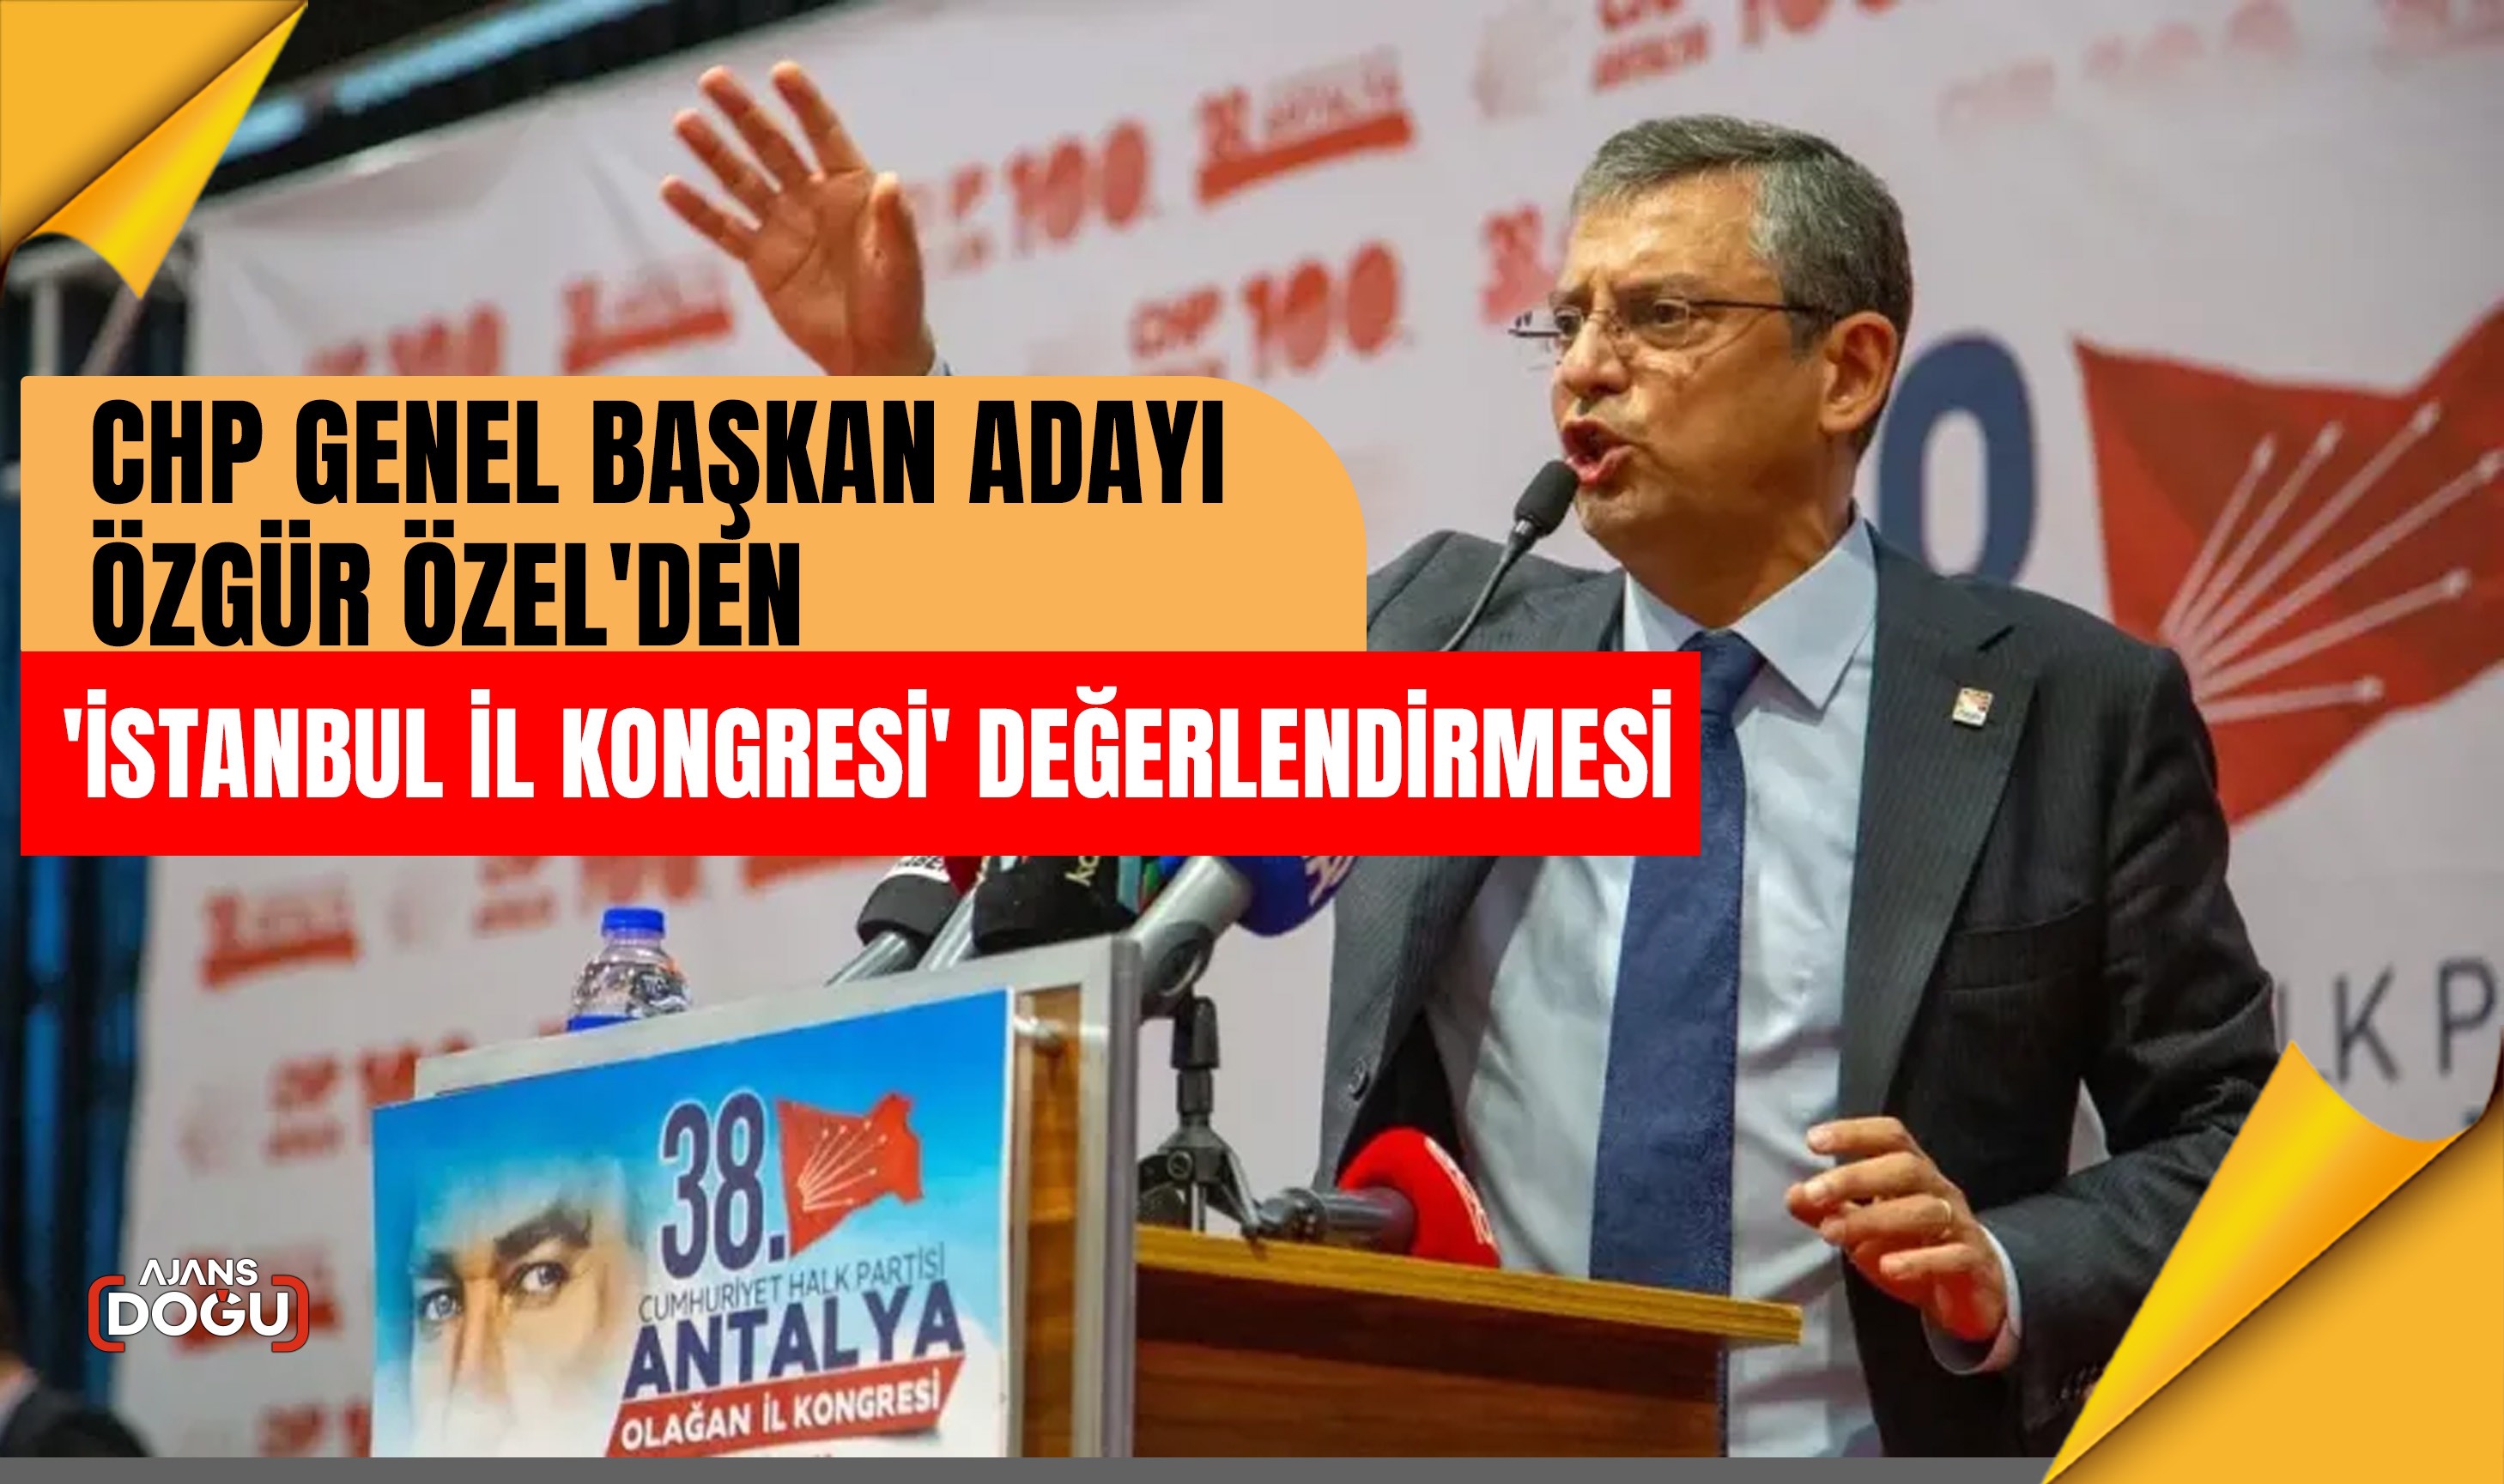 CHP Genel Başkan Adayı Özgür Özel'den 'İstanbul İl Kongresi' değerlendirmesi